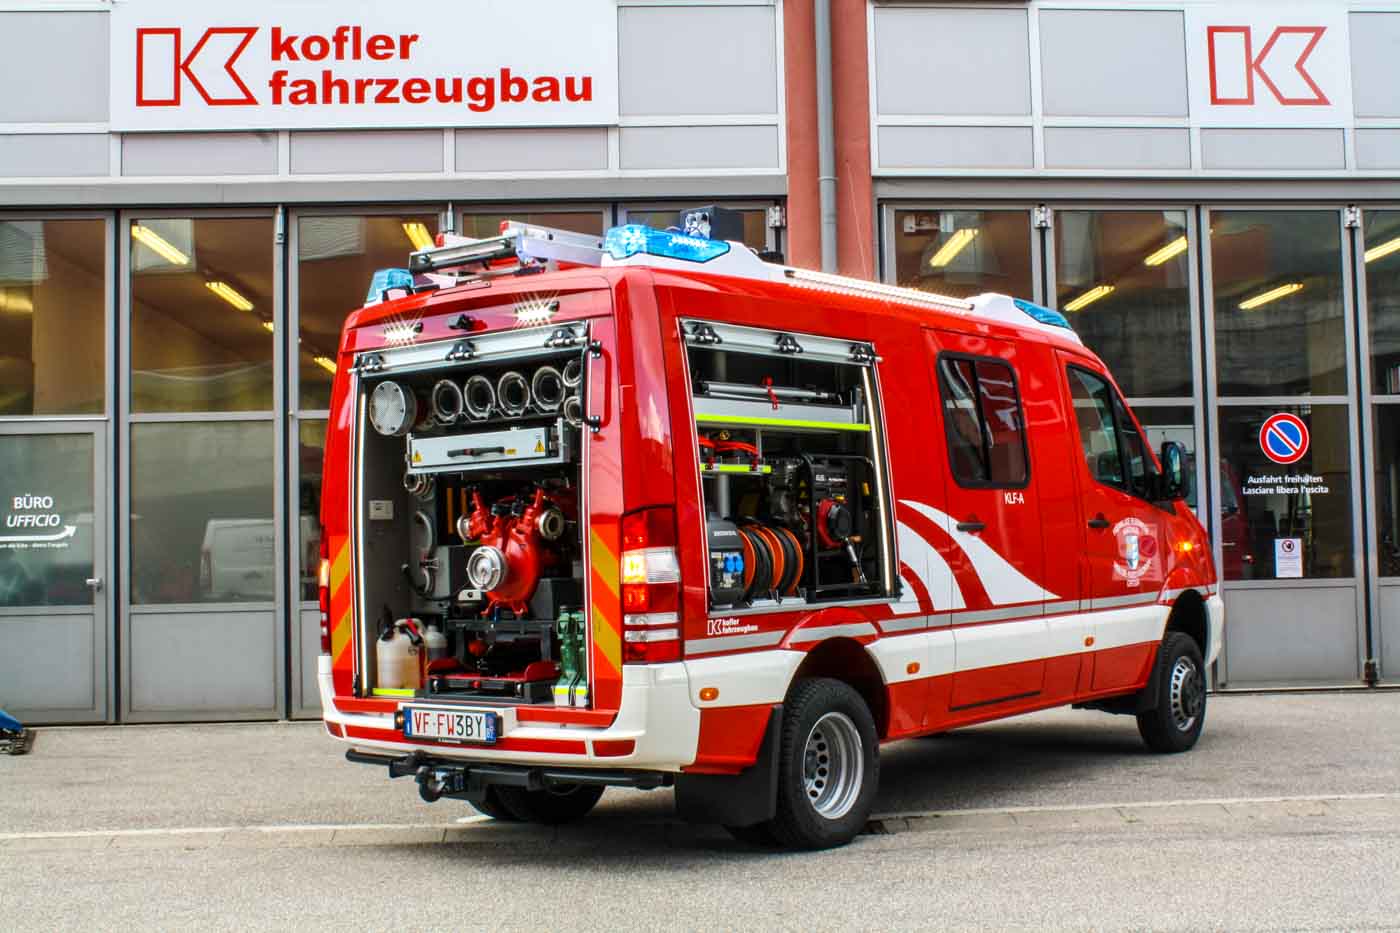 FF-Karthaus-Kofler-Fahrzeugbau